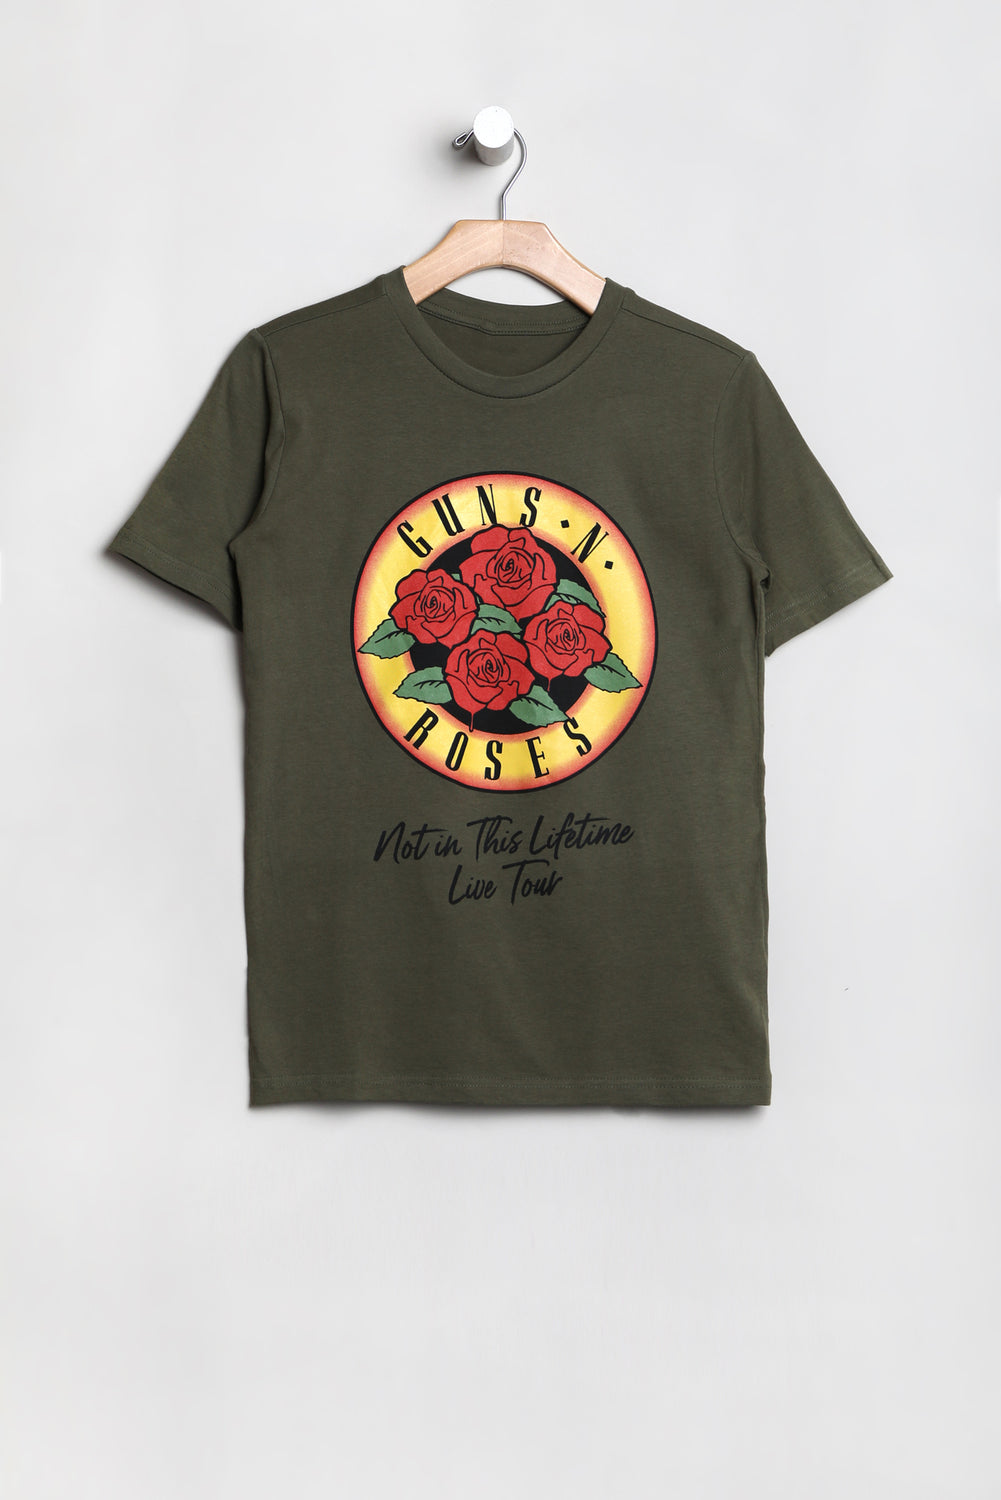 Youth Guns N' Roses T-Shirt Youth Guns N' Roses T-Shirt